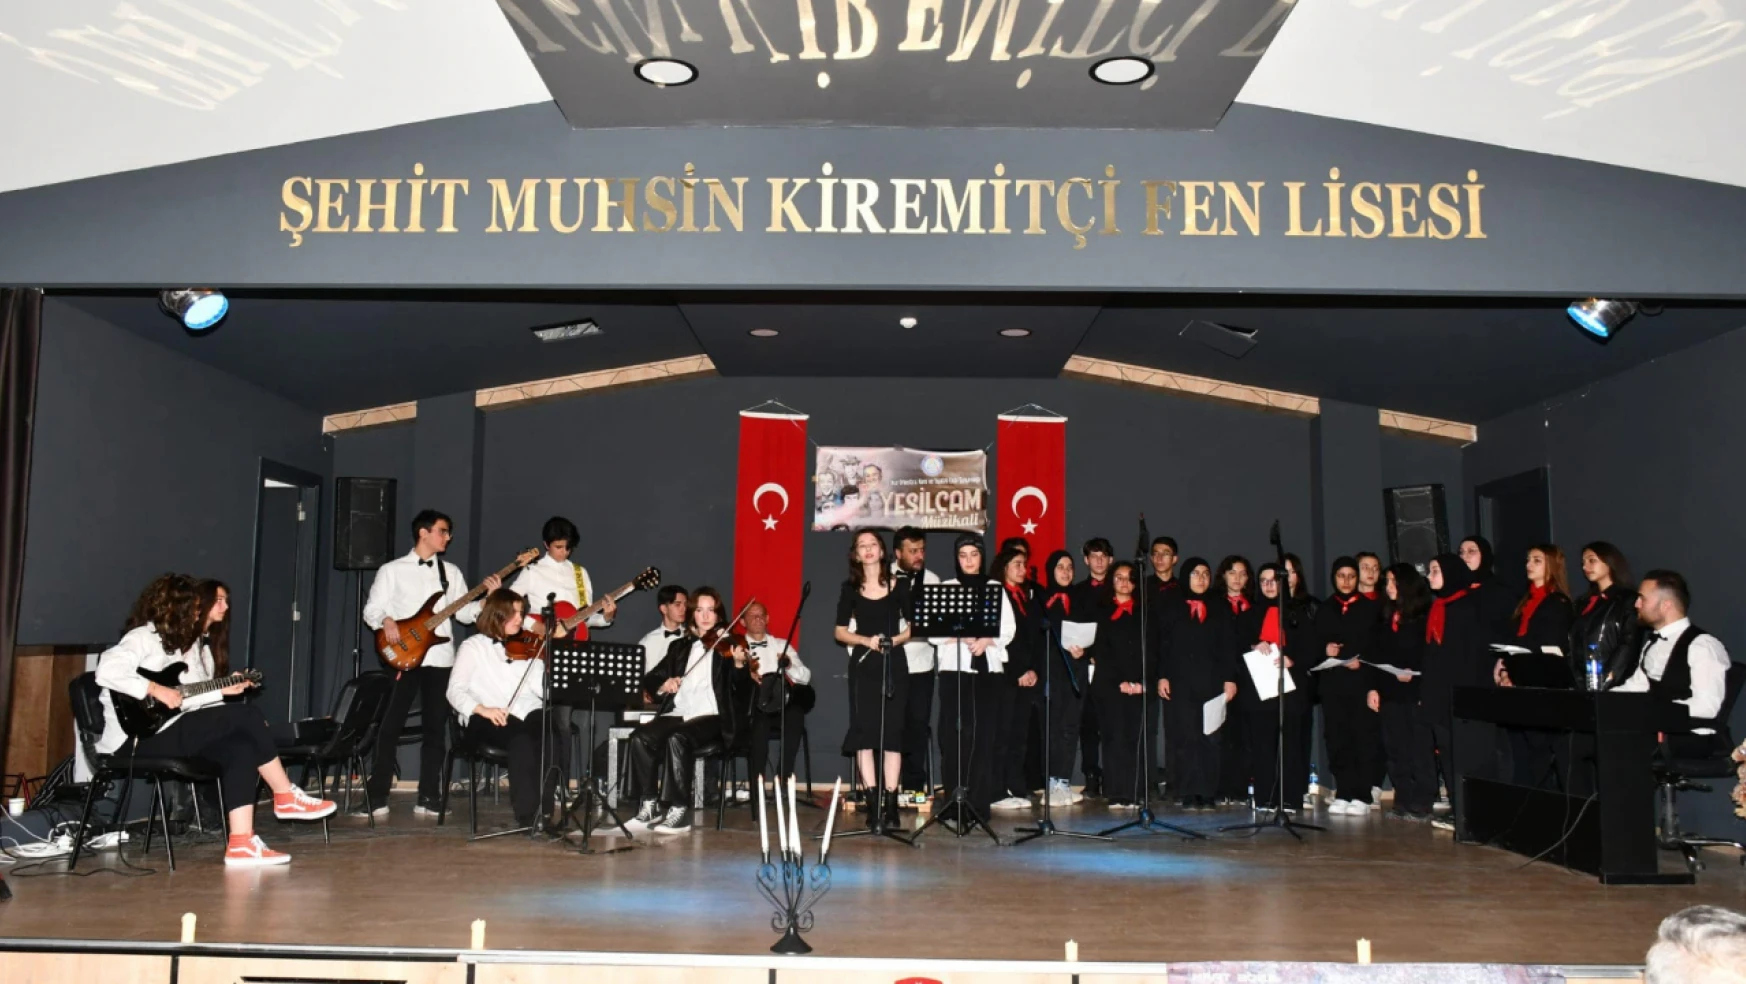 Seydişehir'de Down sendromlu çocuklar için program düzenlendi